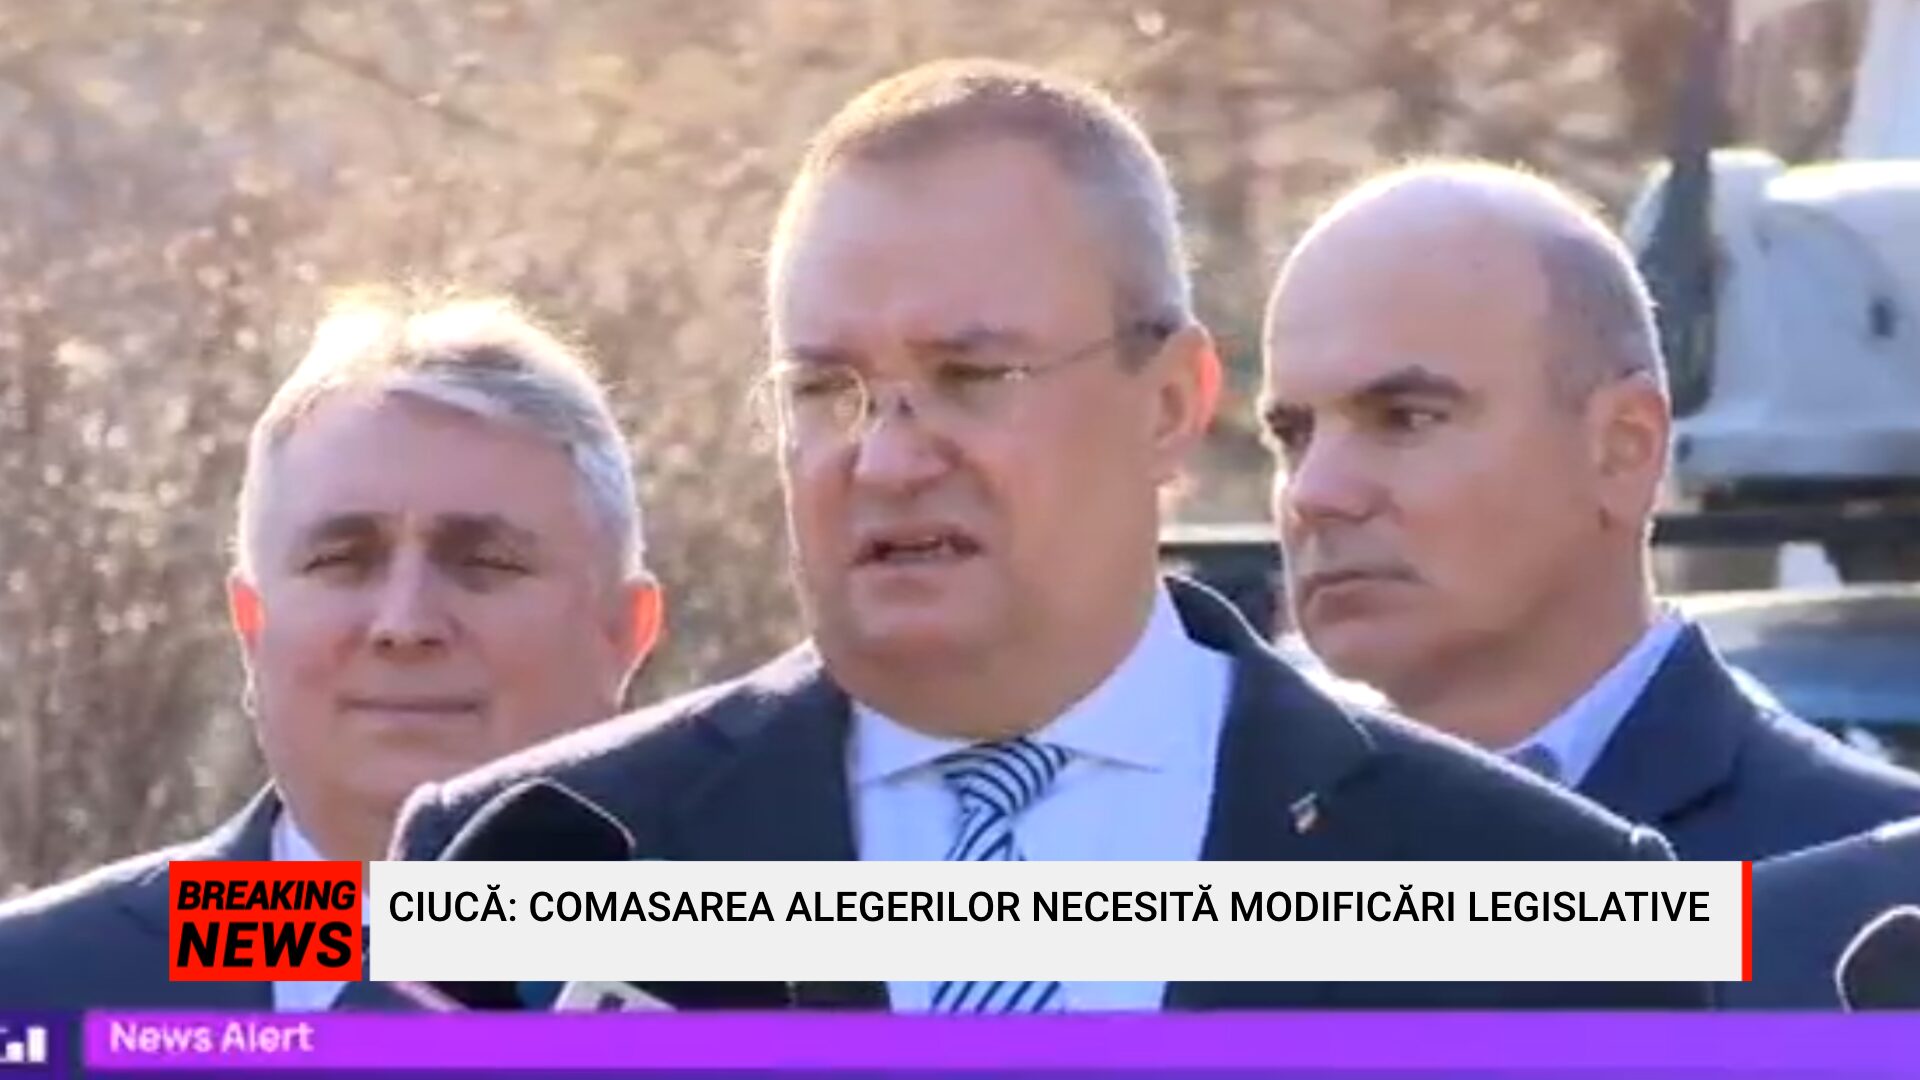 PS News TV | Președintele PNL, Nicolae Ciucă, anunț de ultimă oră